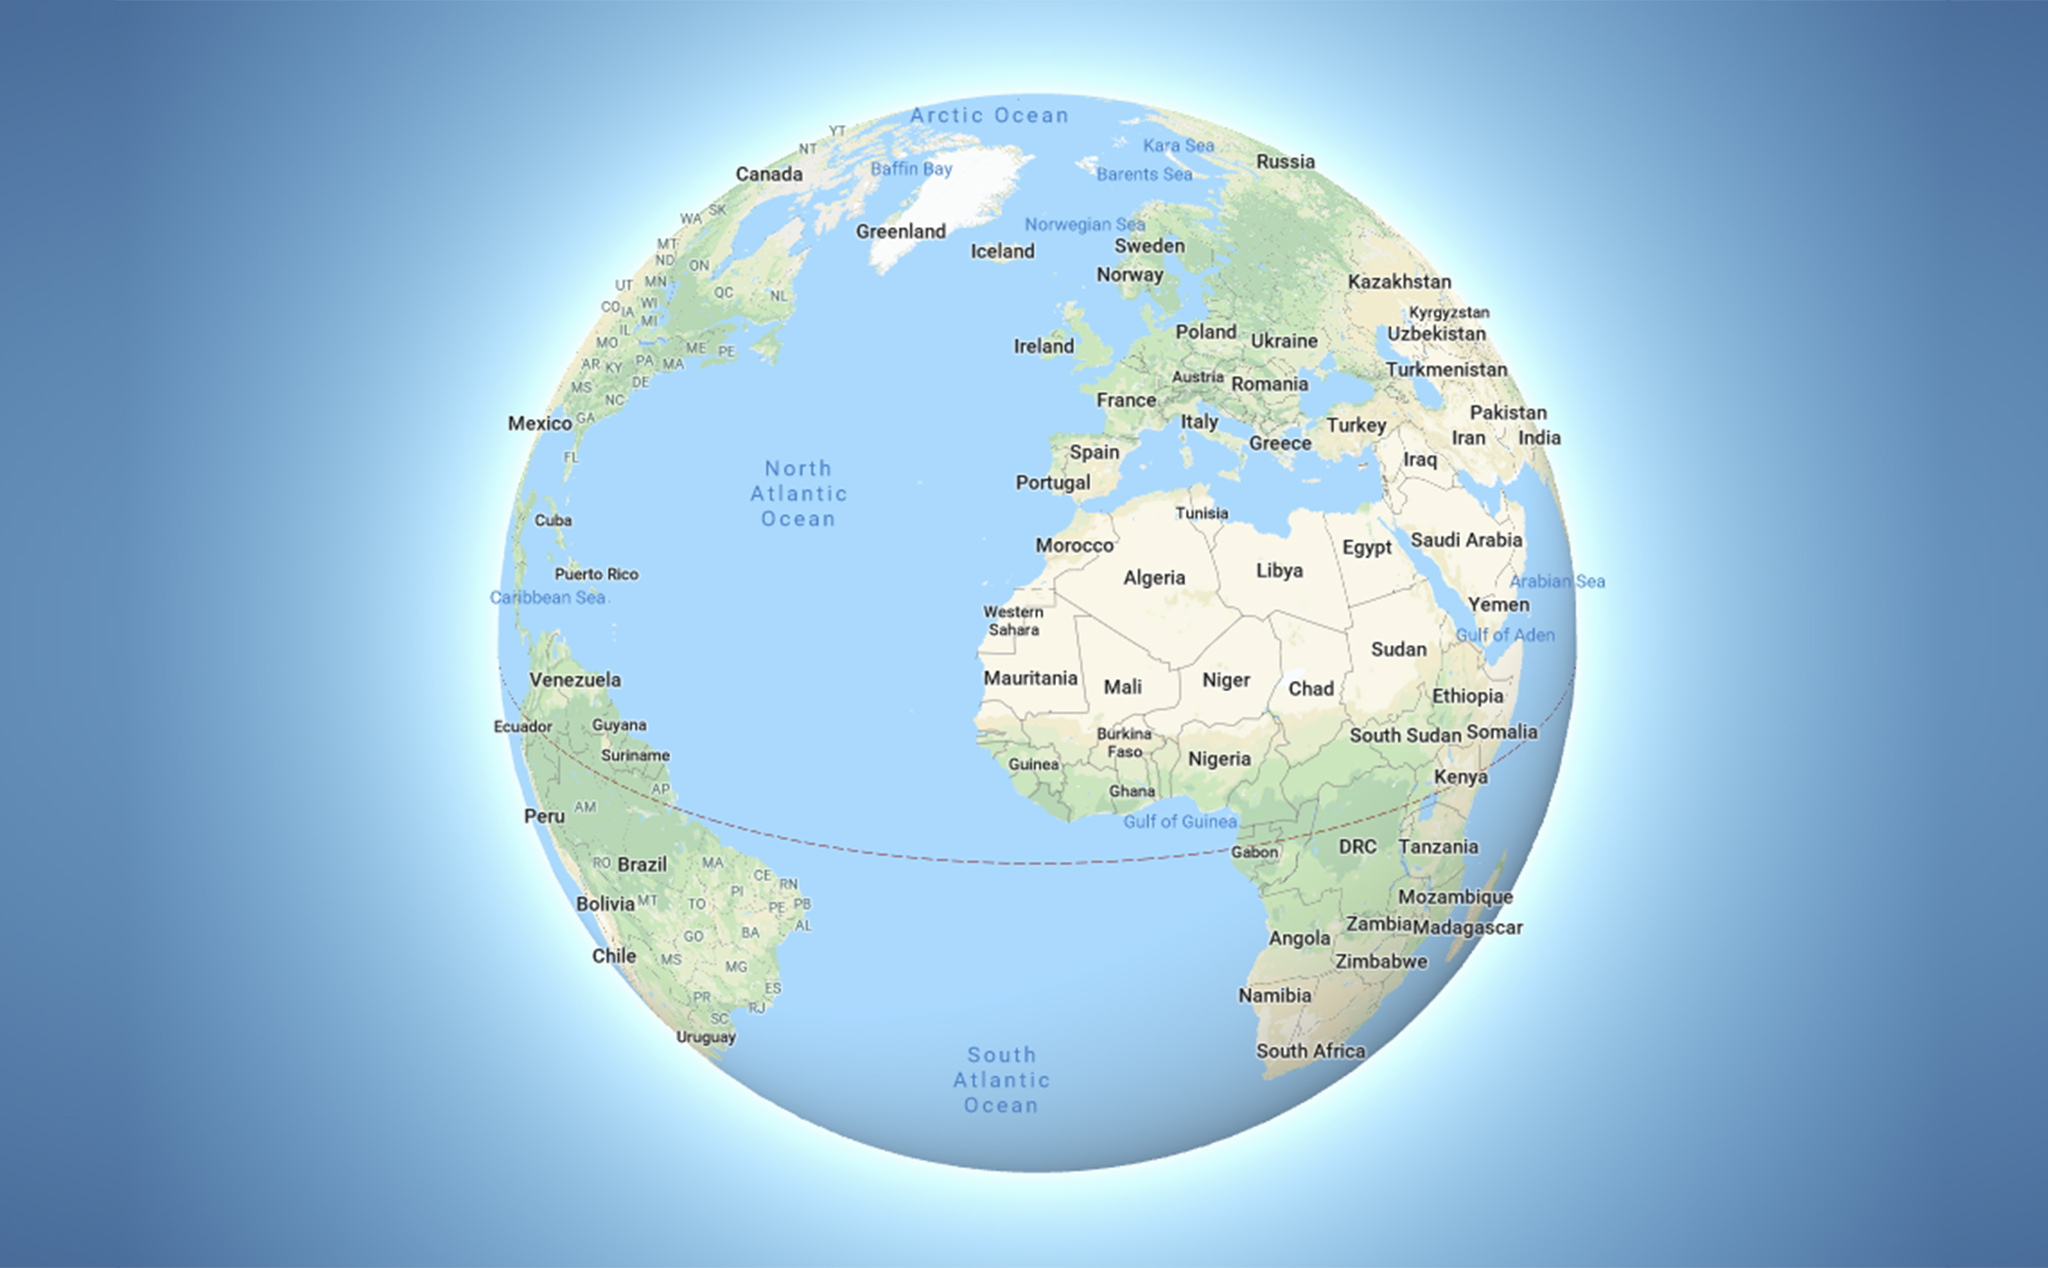 Chế độ 3D Globe cho phép người dùng quay quanh trái đất và khám phá toàn bộ bề mặt nó từ góc nhìn trên cao. Đây là công cụ hữu ích để định vị các địa điểm trên địa cầu và thực hiện nghiên cứu khoa học.